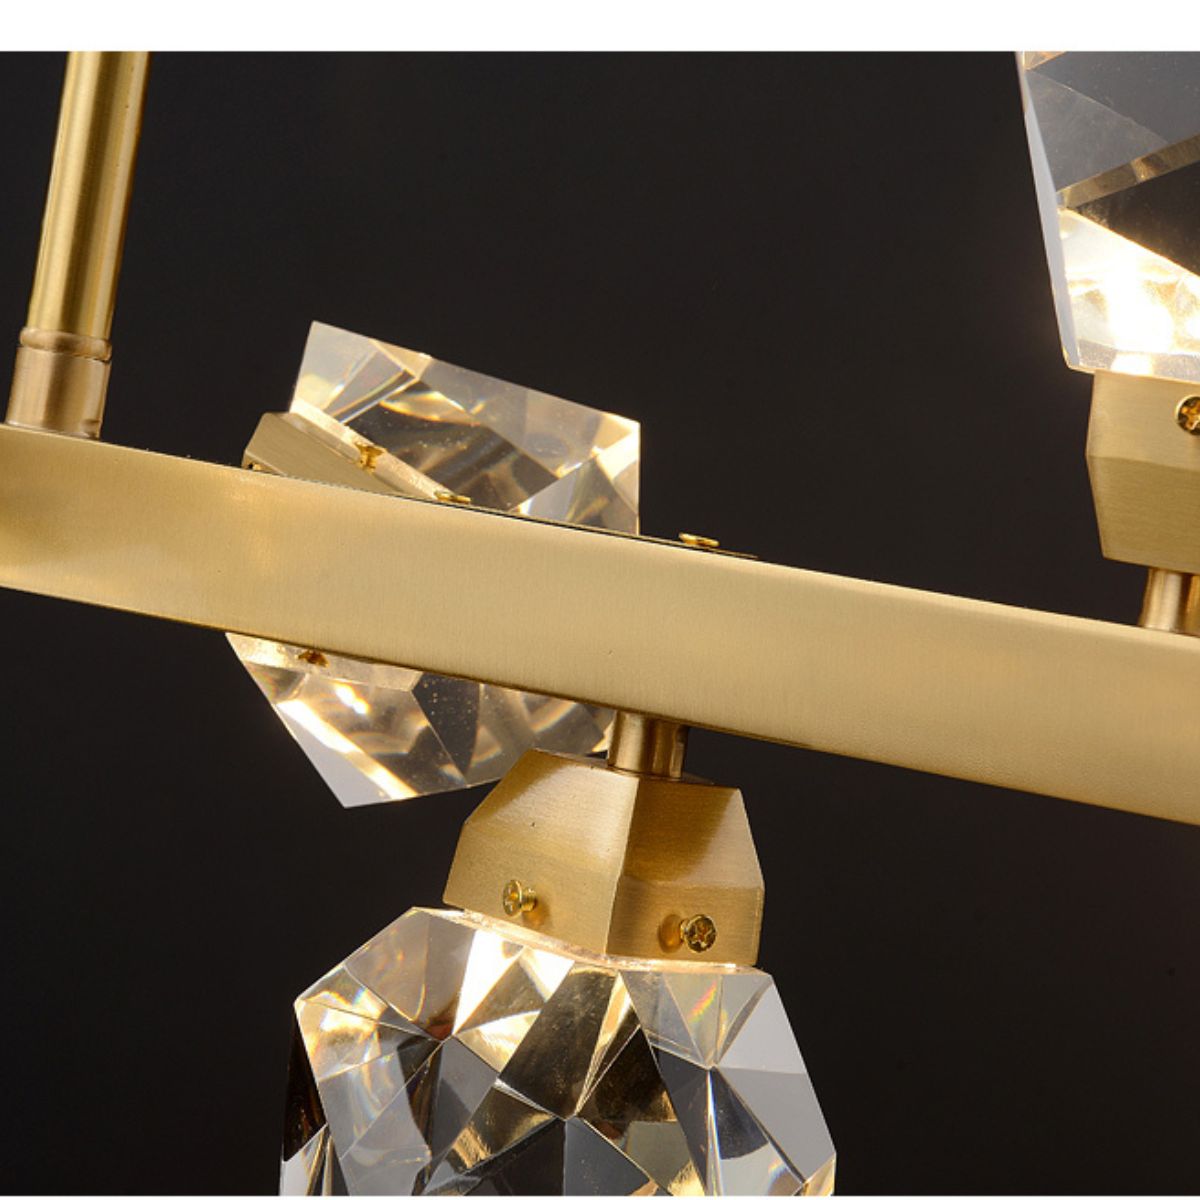 EmeraldLight-LED-Gold-chandelier-elegant-interior-australia-1